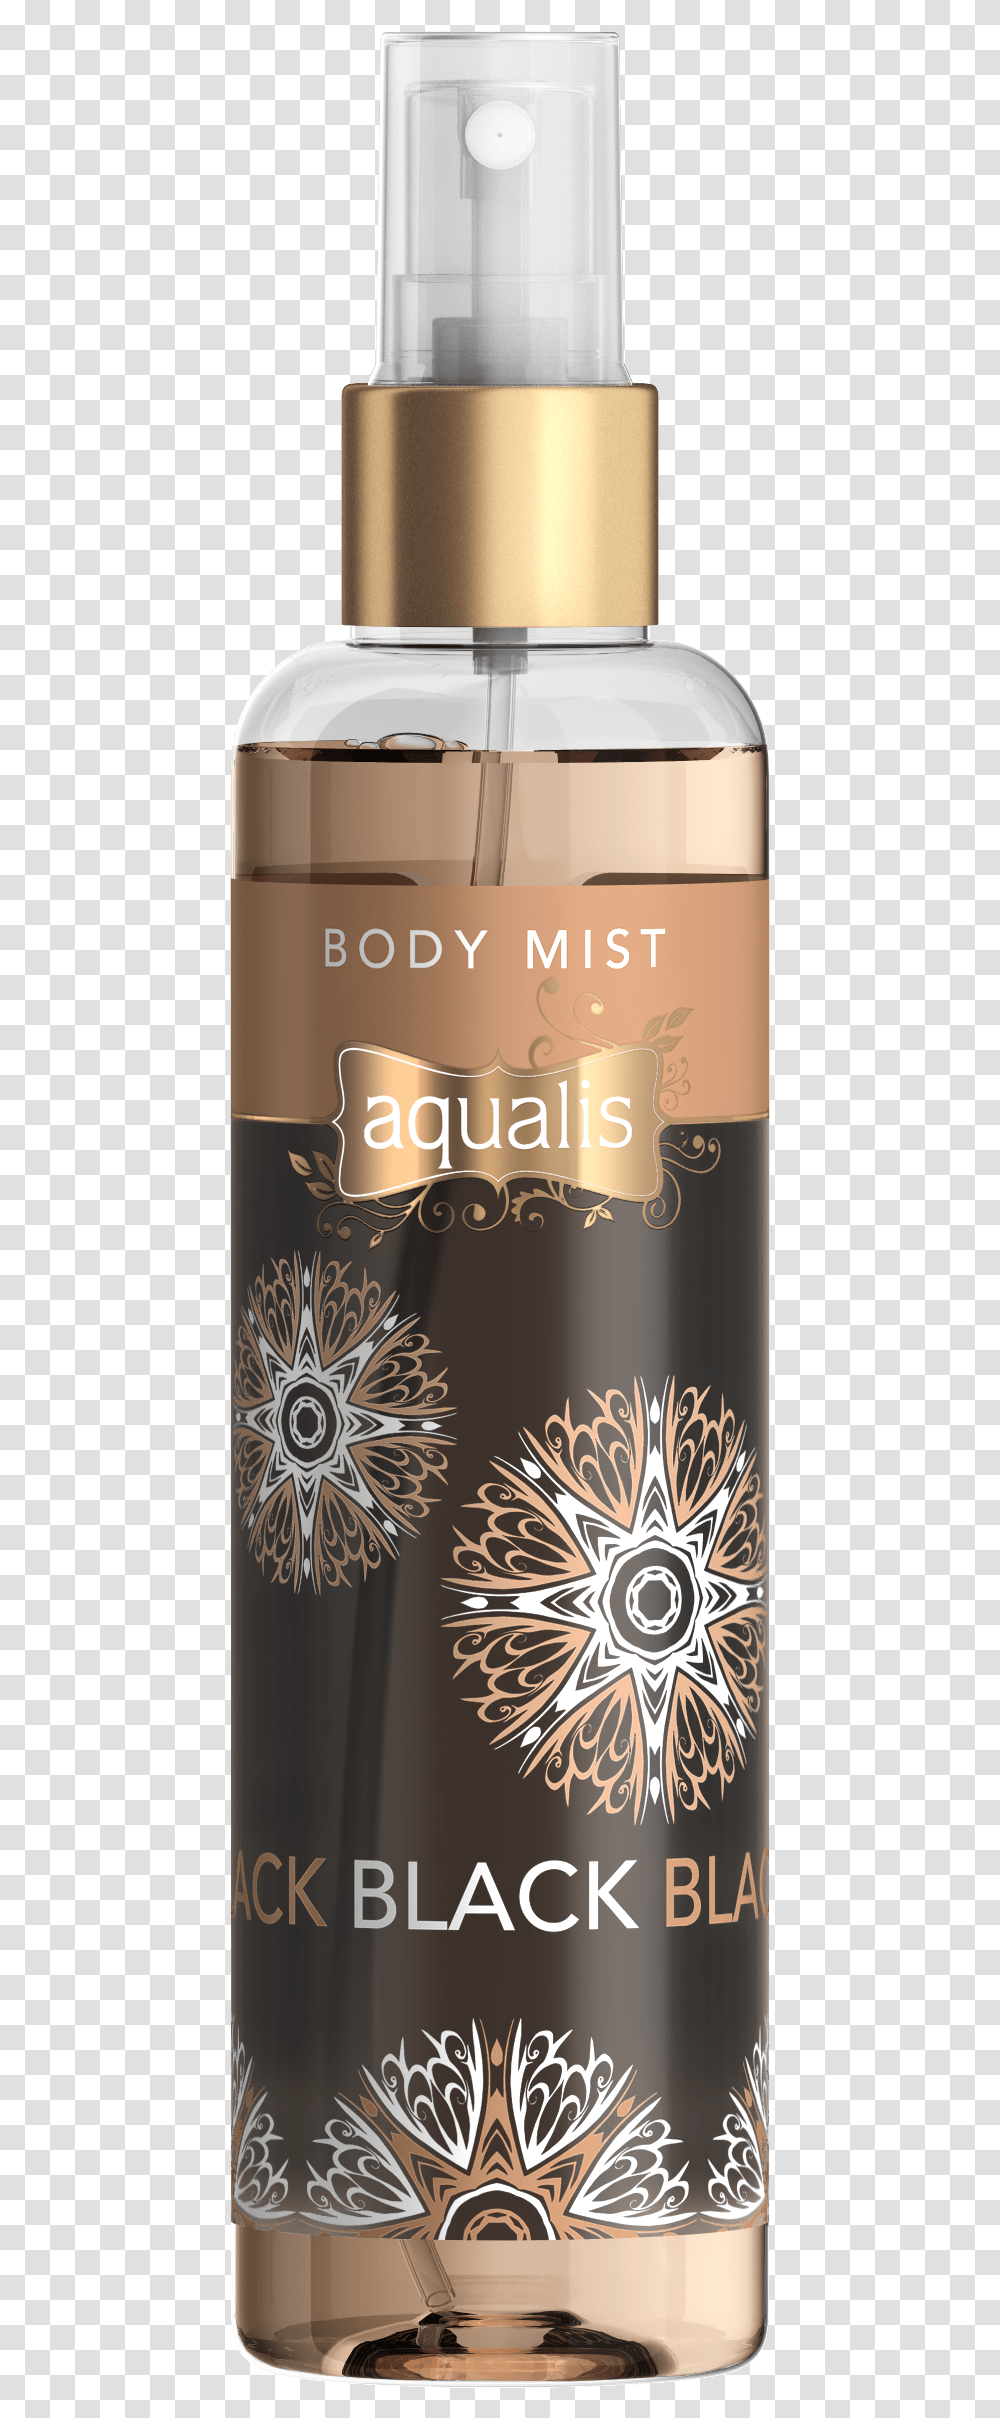 Aqualis Body Mist, Label, Bottle, Beverage Transparent Png